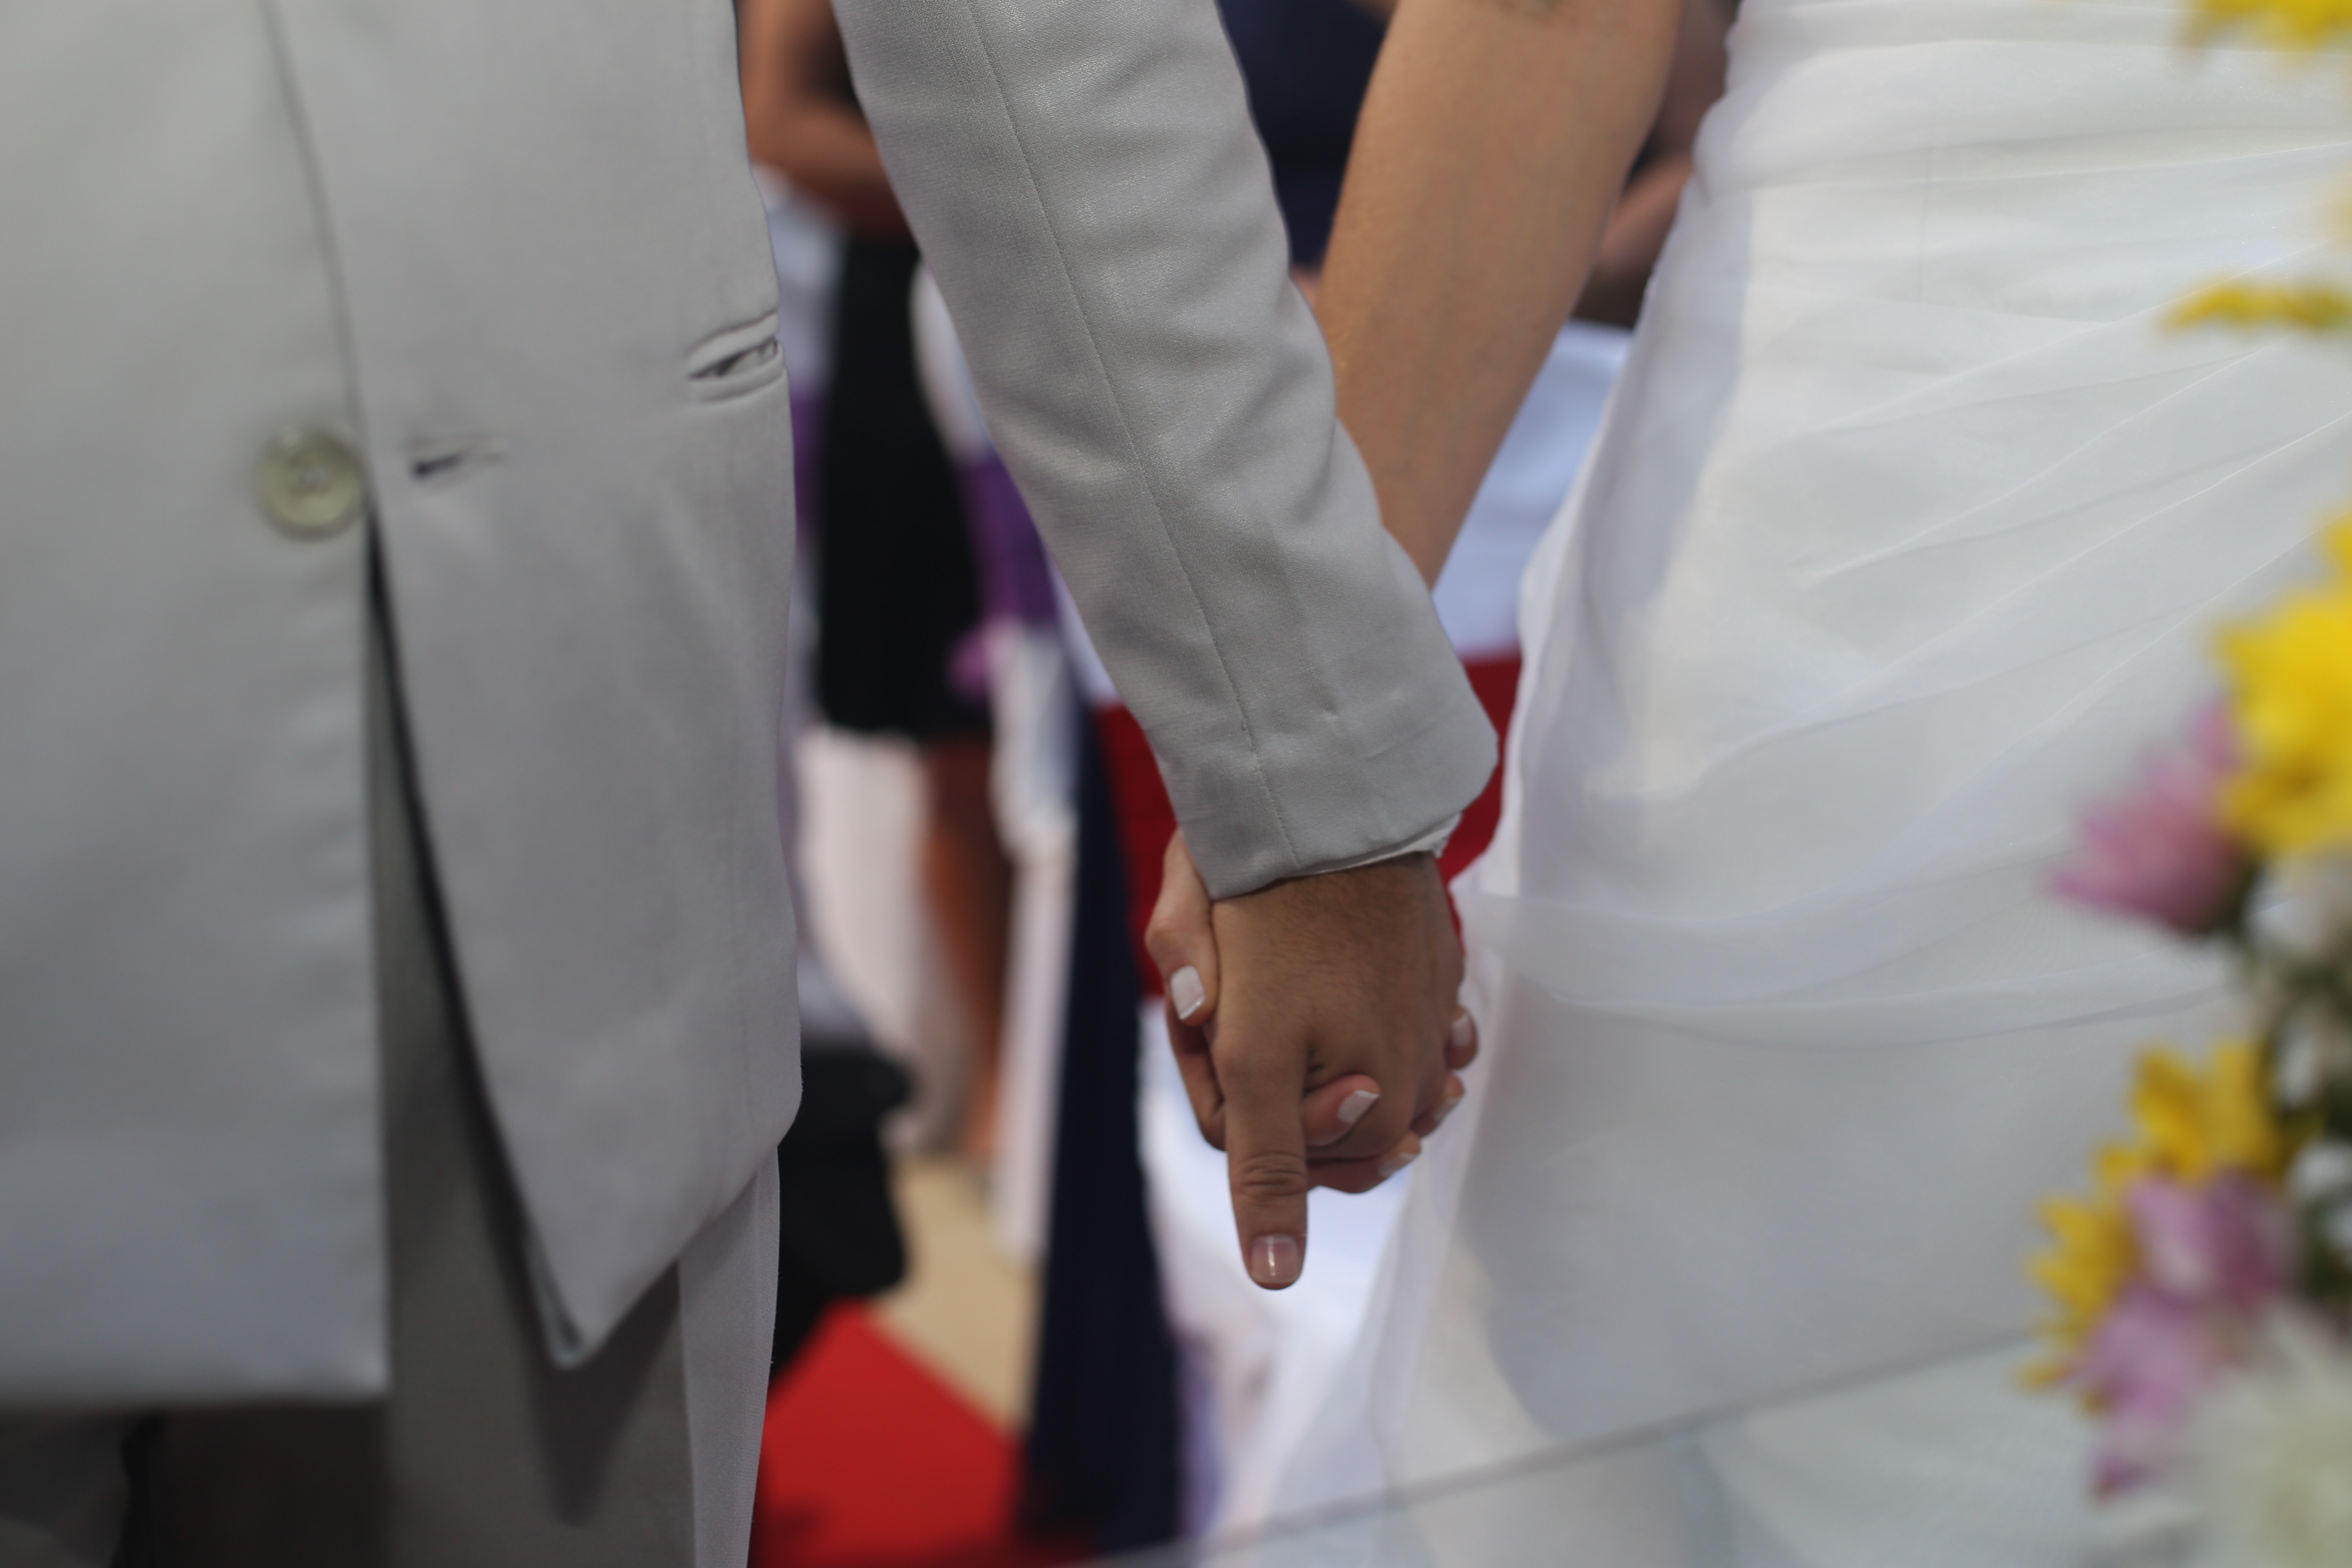 Действительный брак. Жених и невеста держатся за руки. Фиктивный брак фото. Прощание невесты с семьёй. Женился на руке.